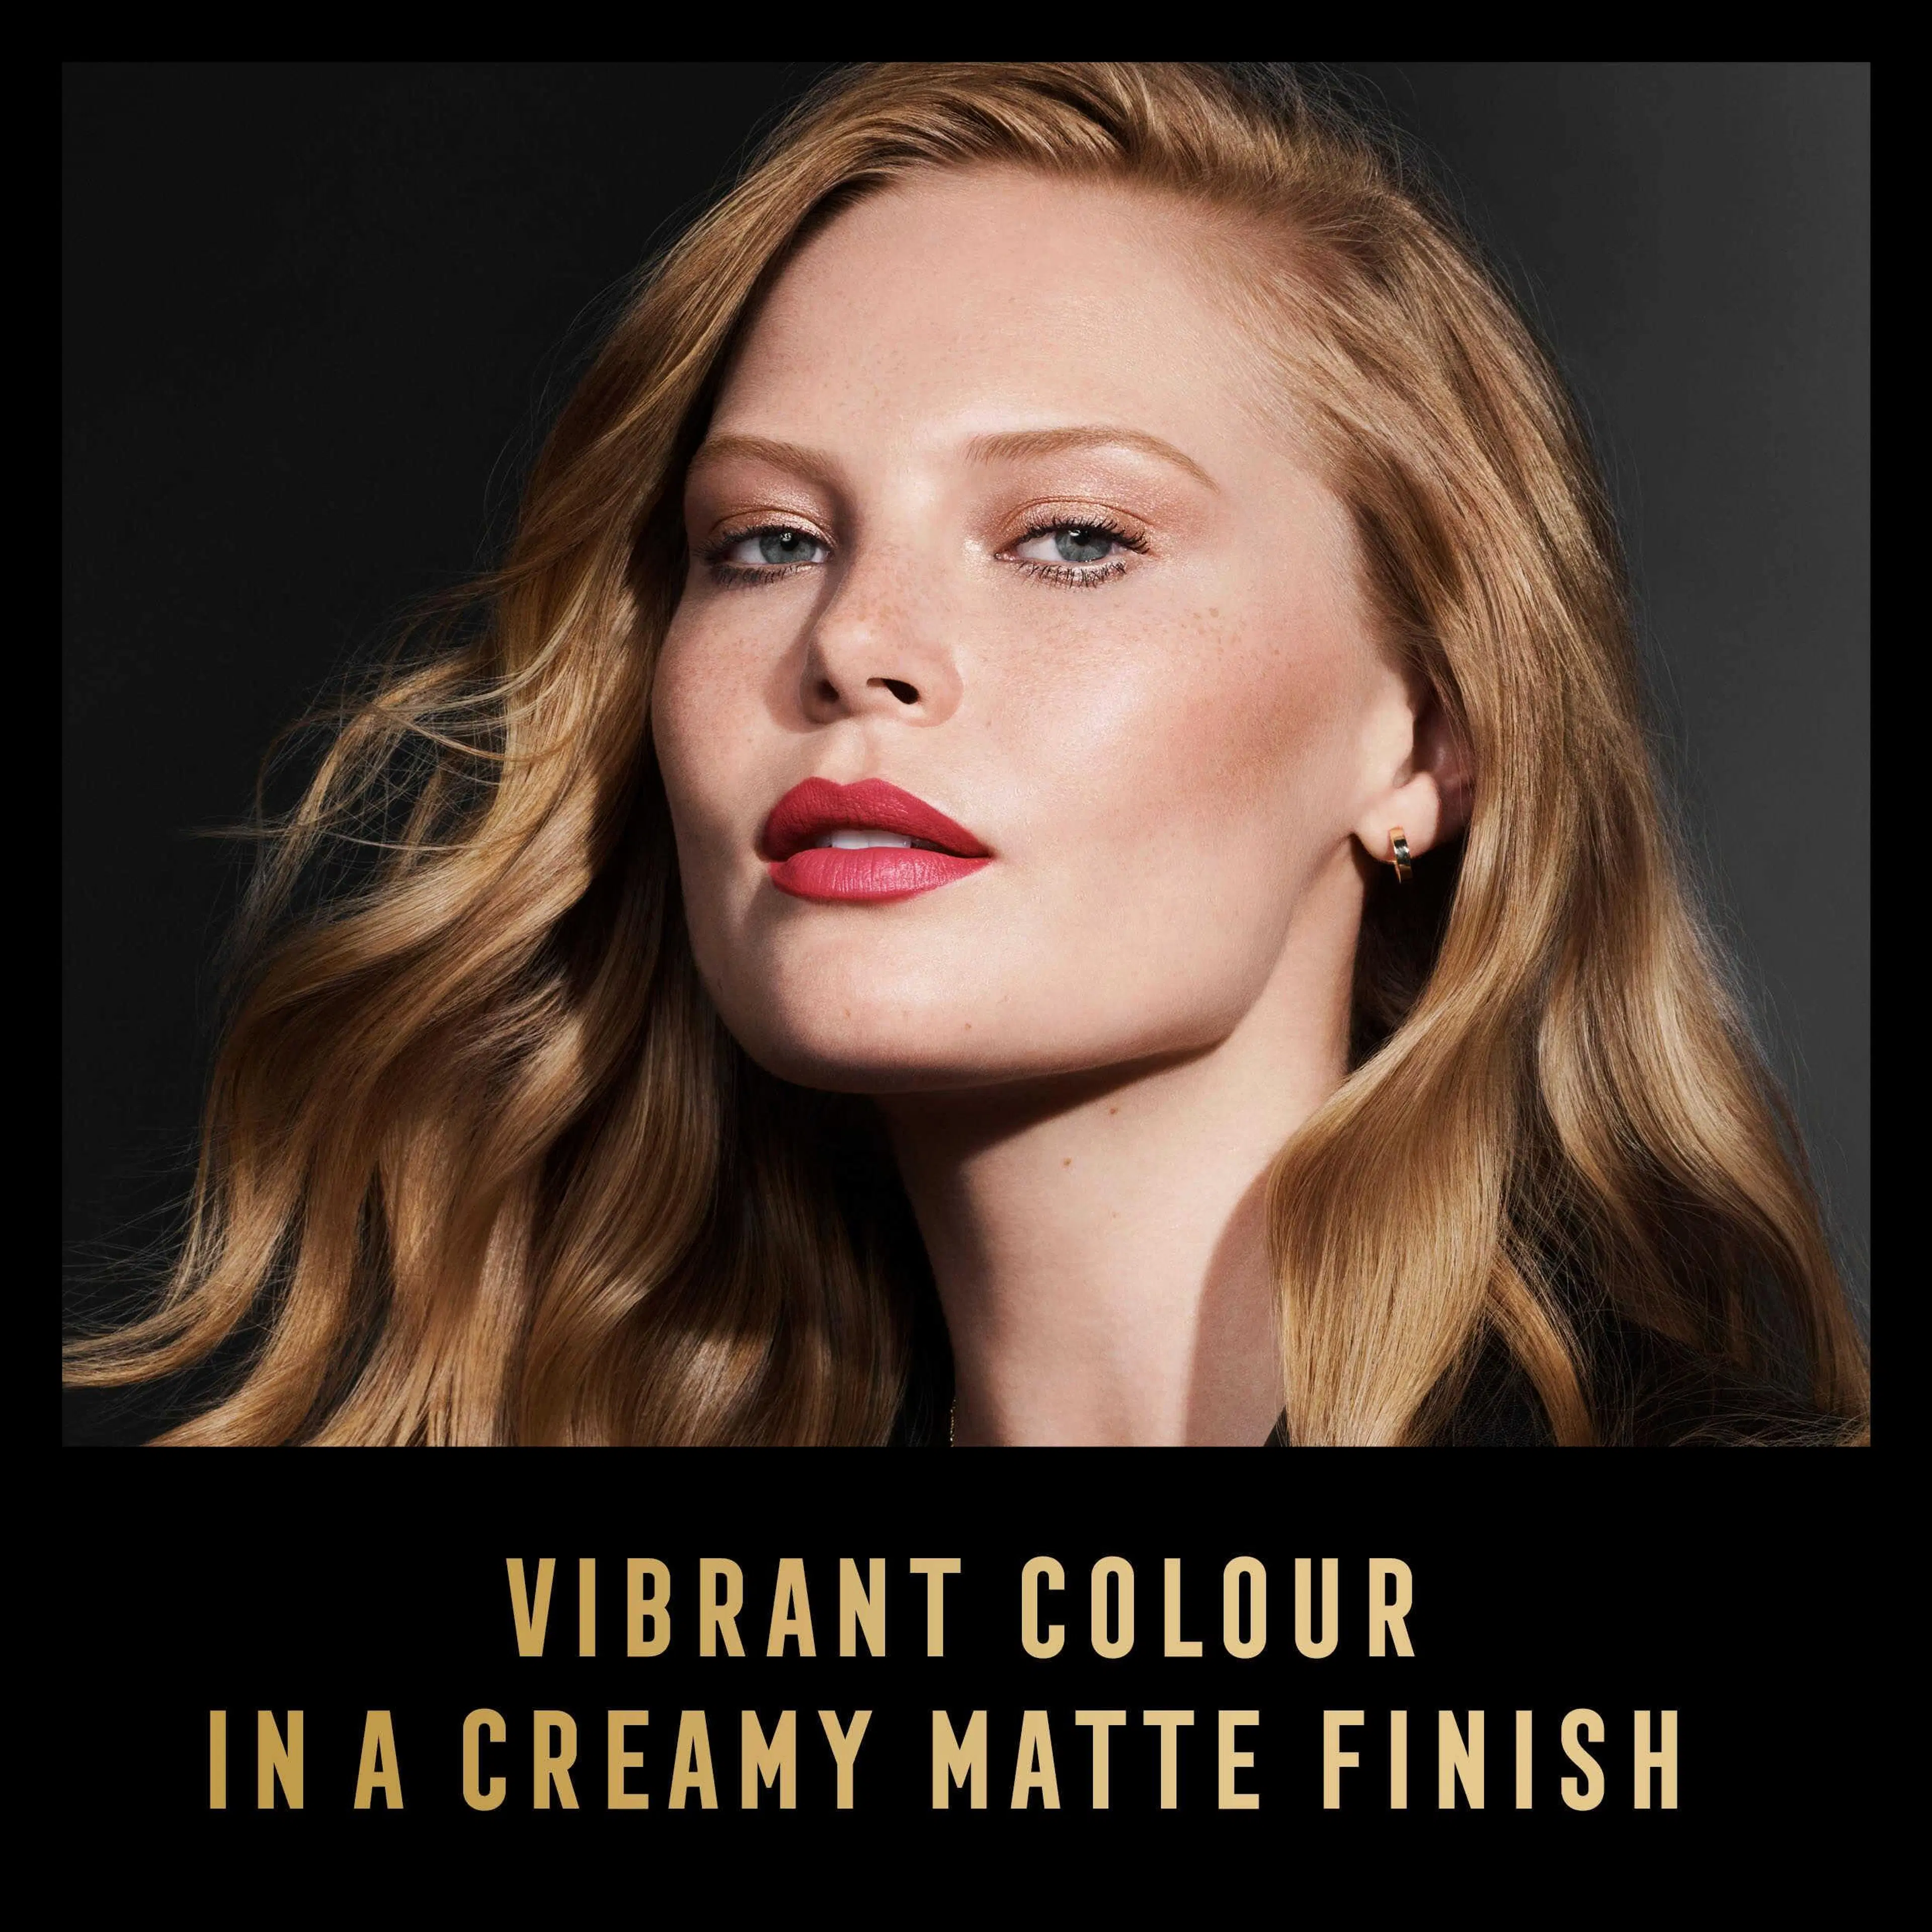 Max Factor Colour Elixir Velvet Matte Lipstick 20 Rose